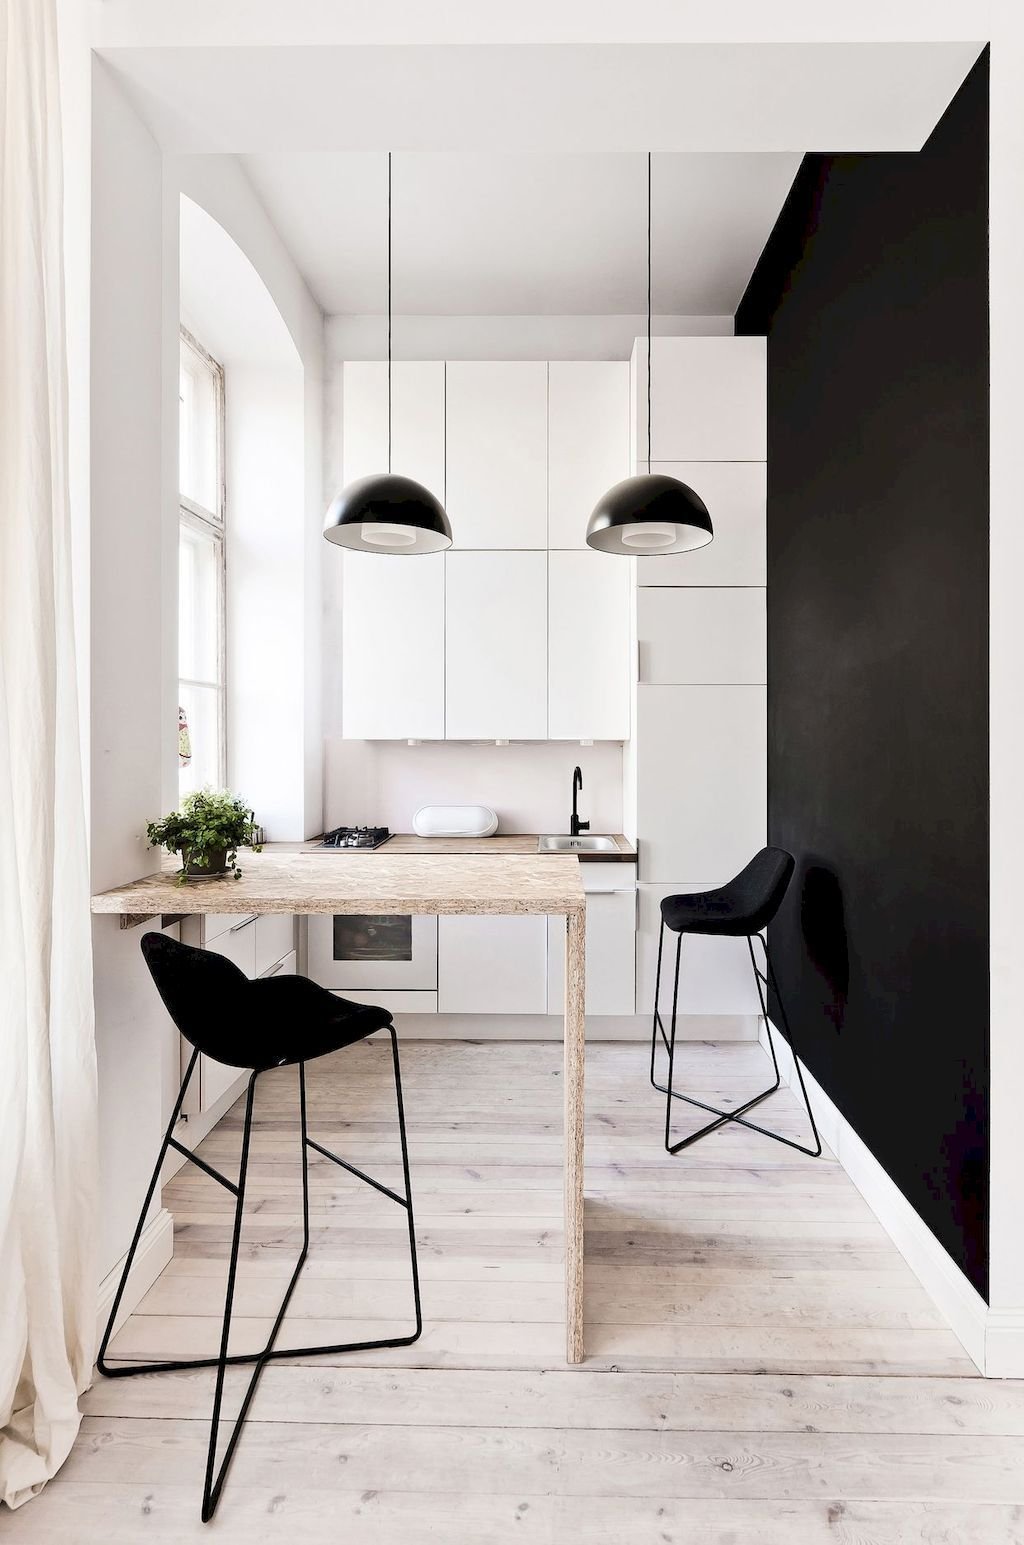 Stupenda cucina piccola da grandi armonie in cui la dominanza del bianco contrasta fortemente con la parete in vernice nera. Il parquet in legno chiaro dona carattere ed eleganza allo spazio.